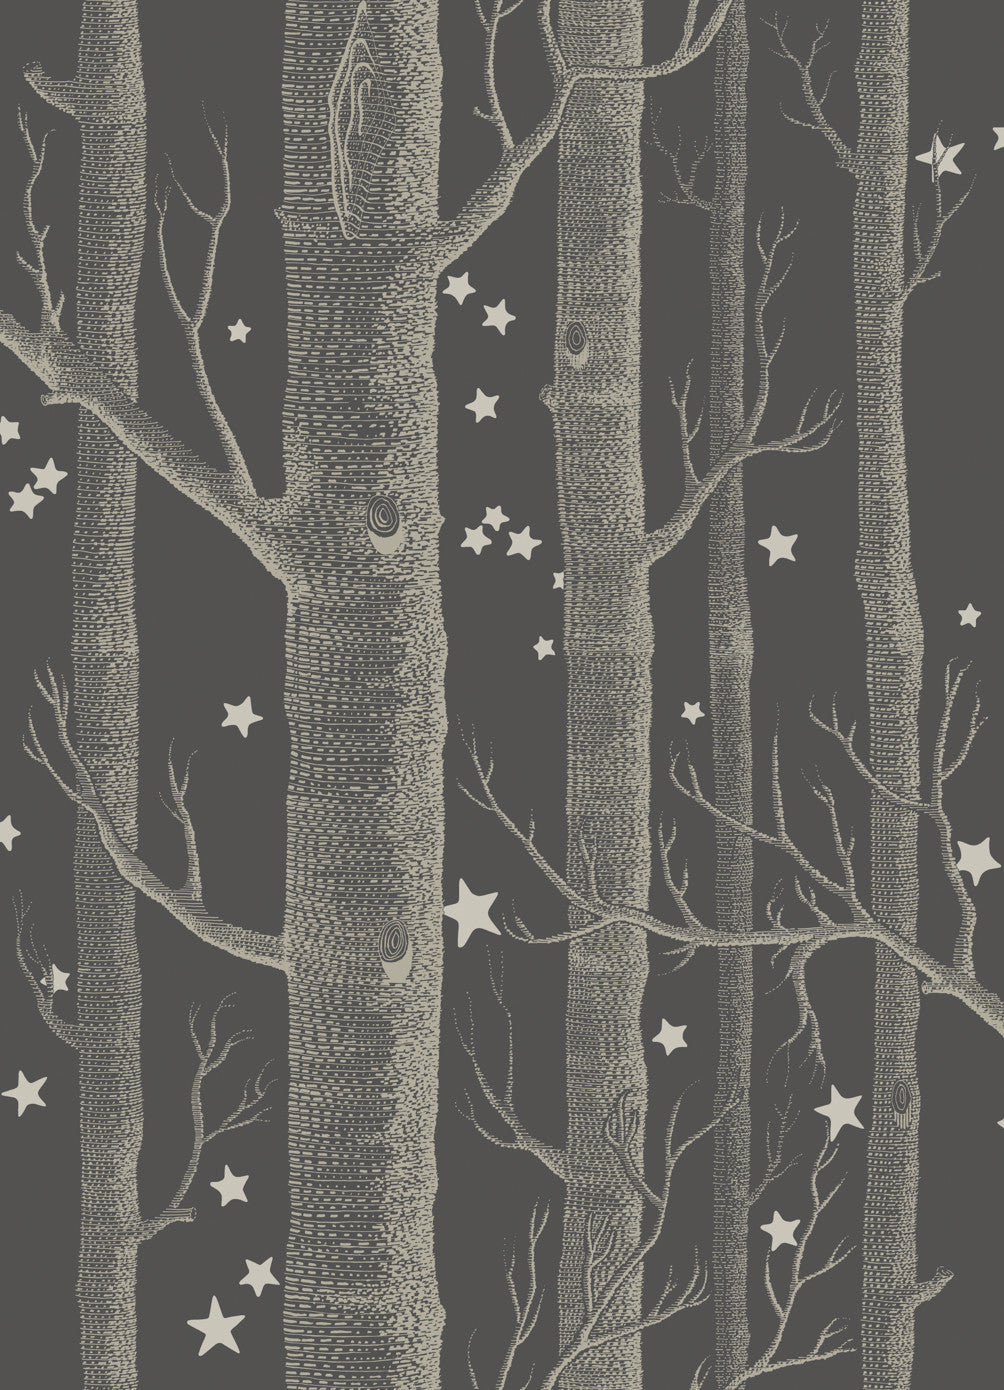 Woods & Stars - Charcoal